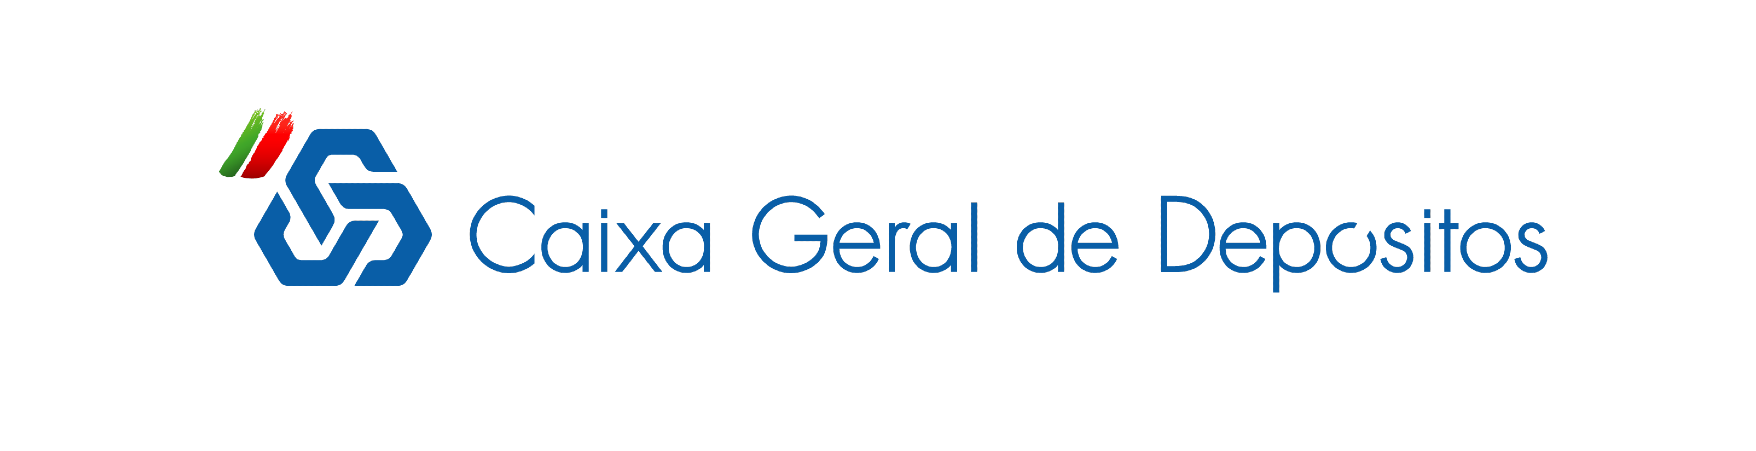 Caixa-geral-de-depositos logotipo noticia 2023